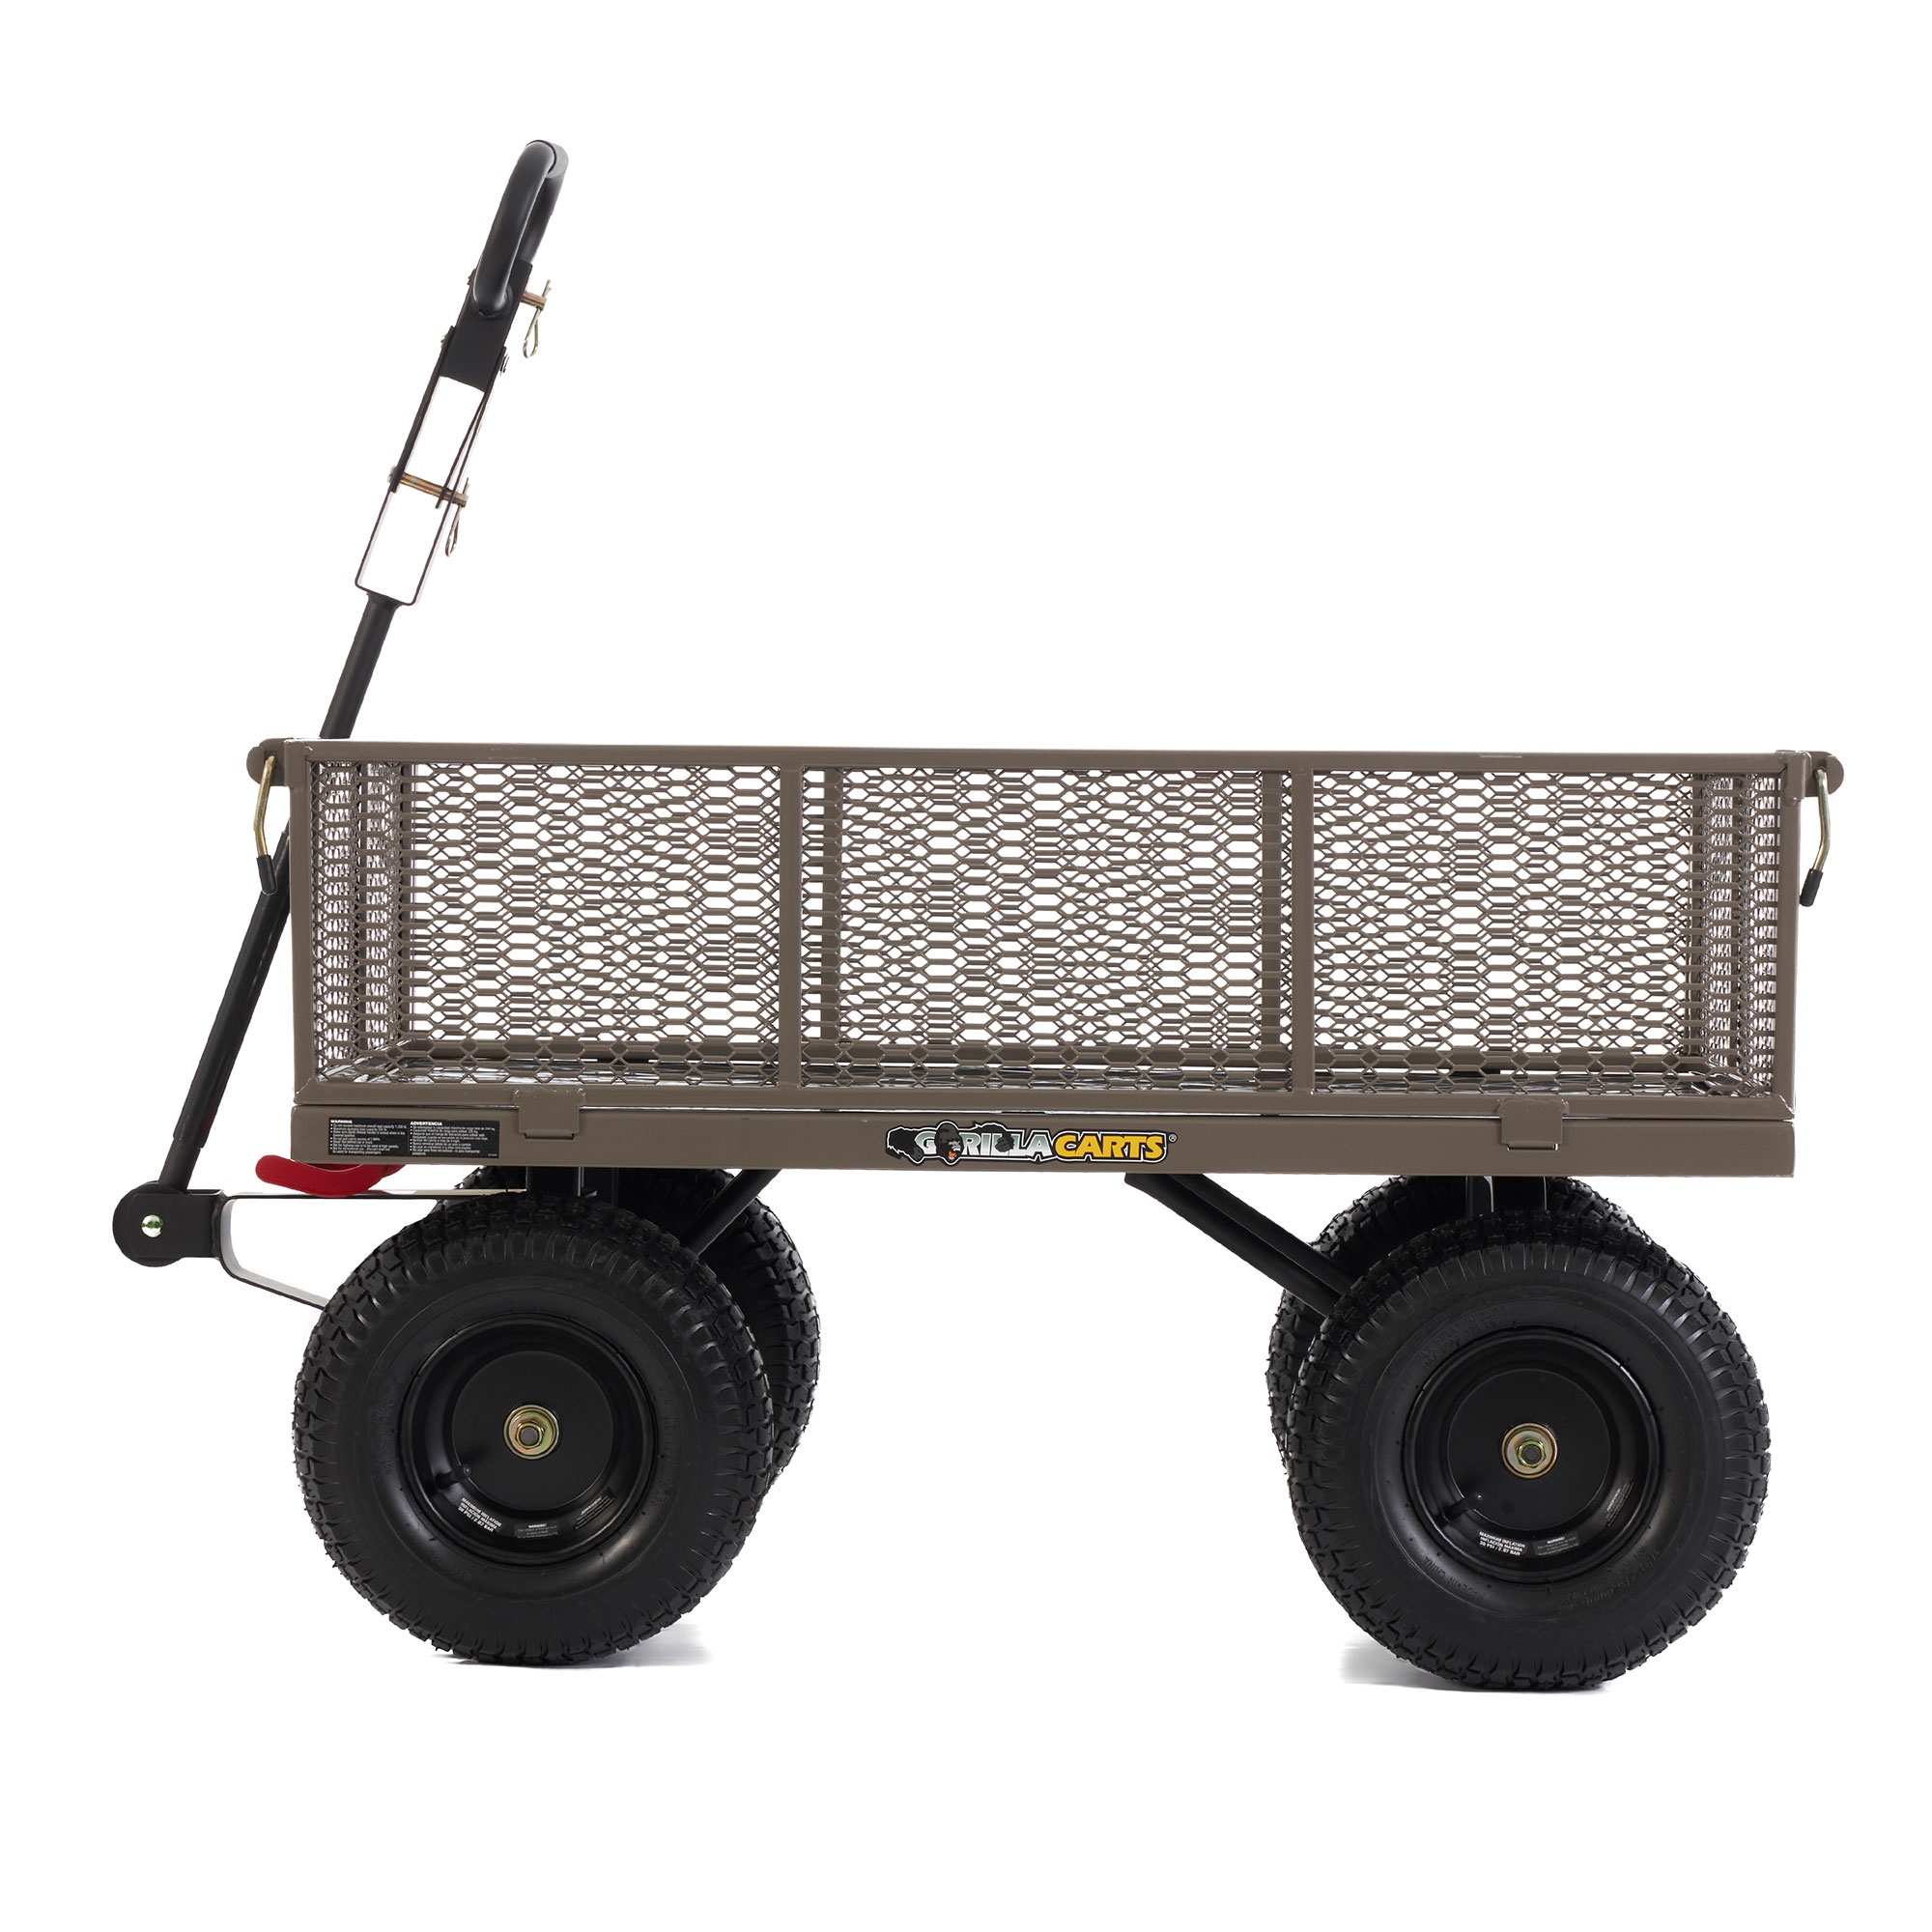 Gorilla Carts Steel Dump Cart Garden Beach Wagon, 1,200Lb Capacity, Gray - image 3 of 12